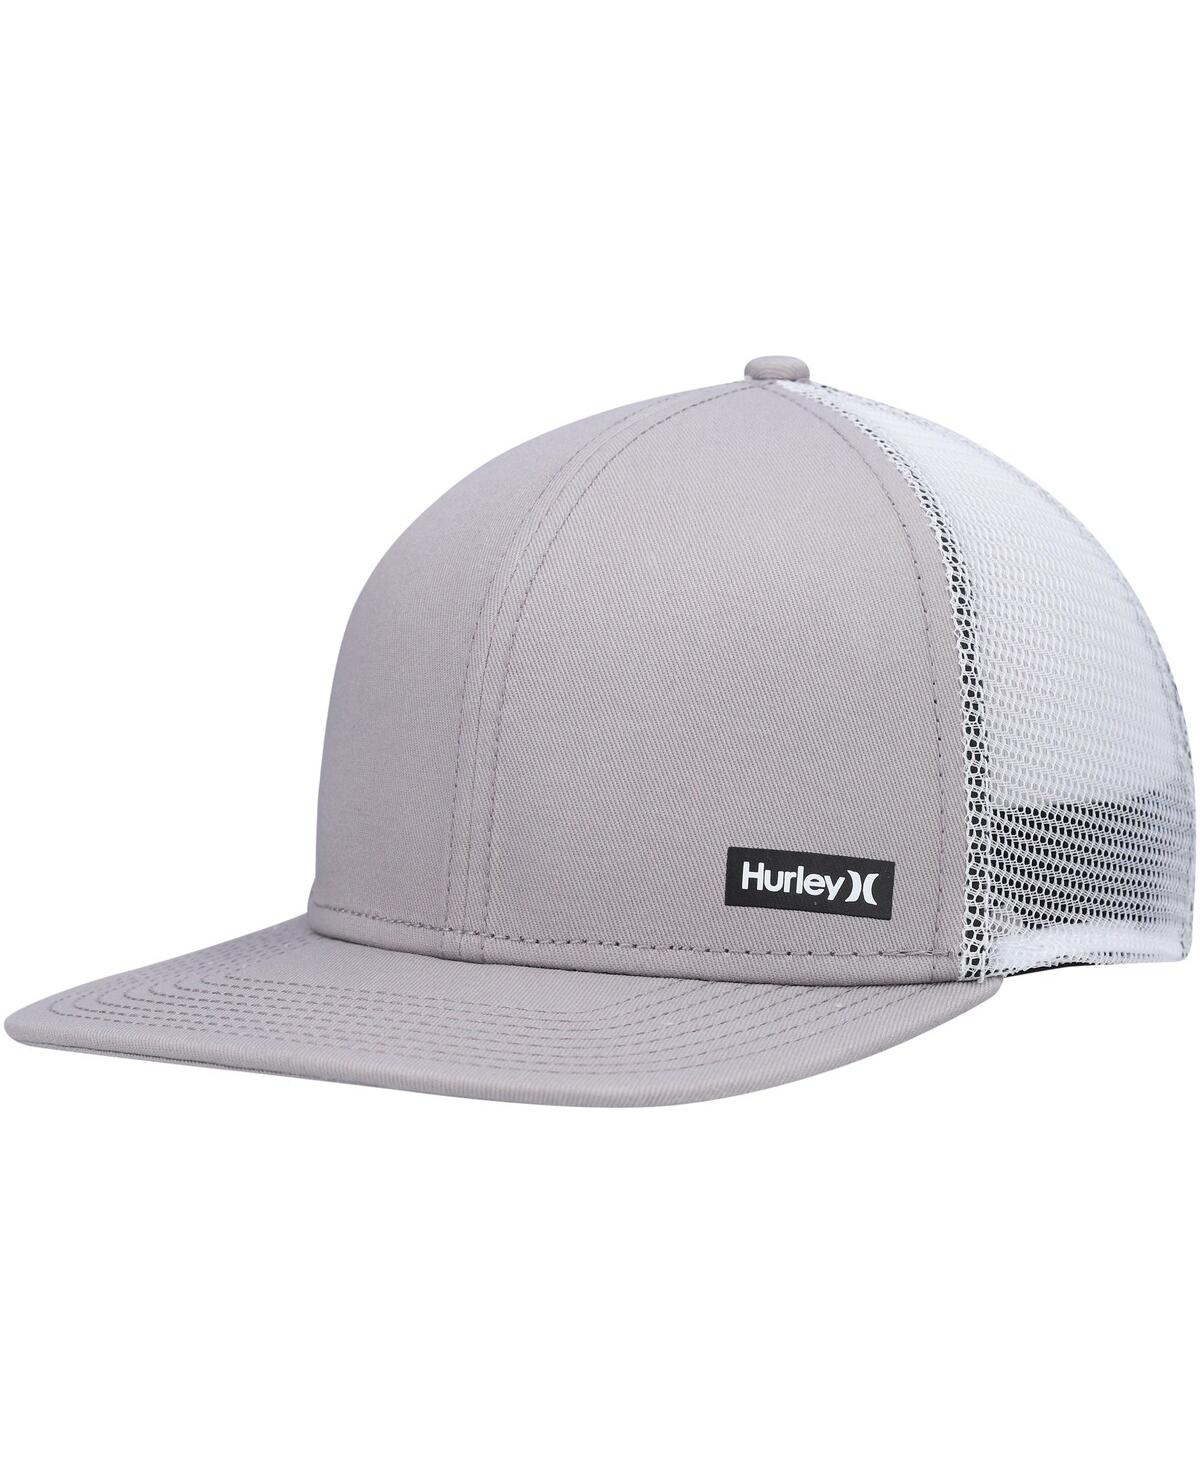 Shop Hurley Men's  Gray Supply Trucker Snapback Hat